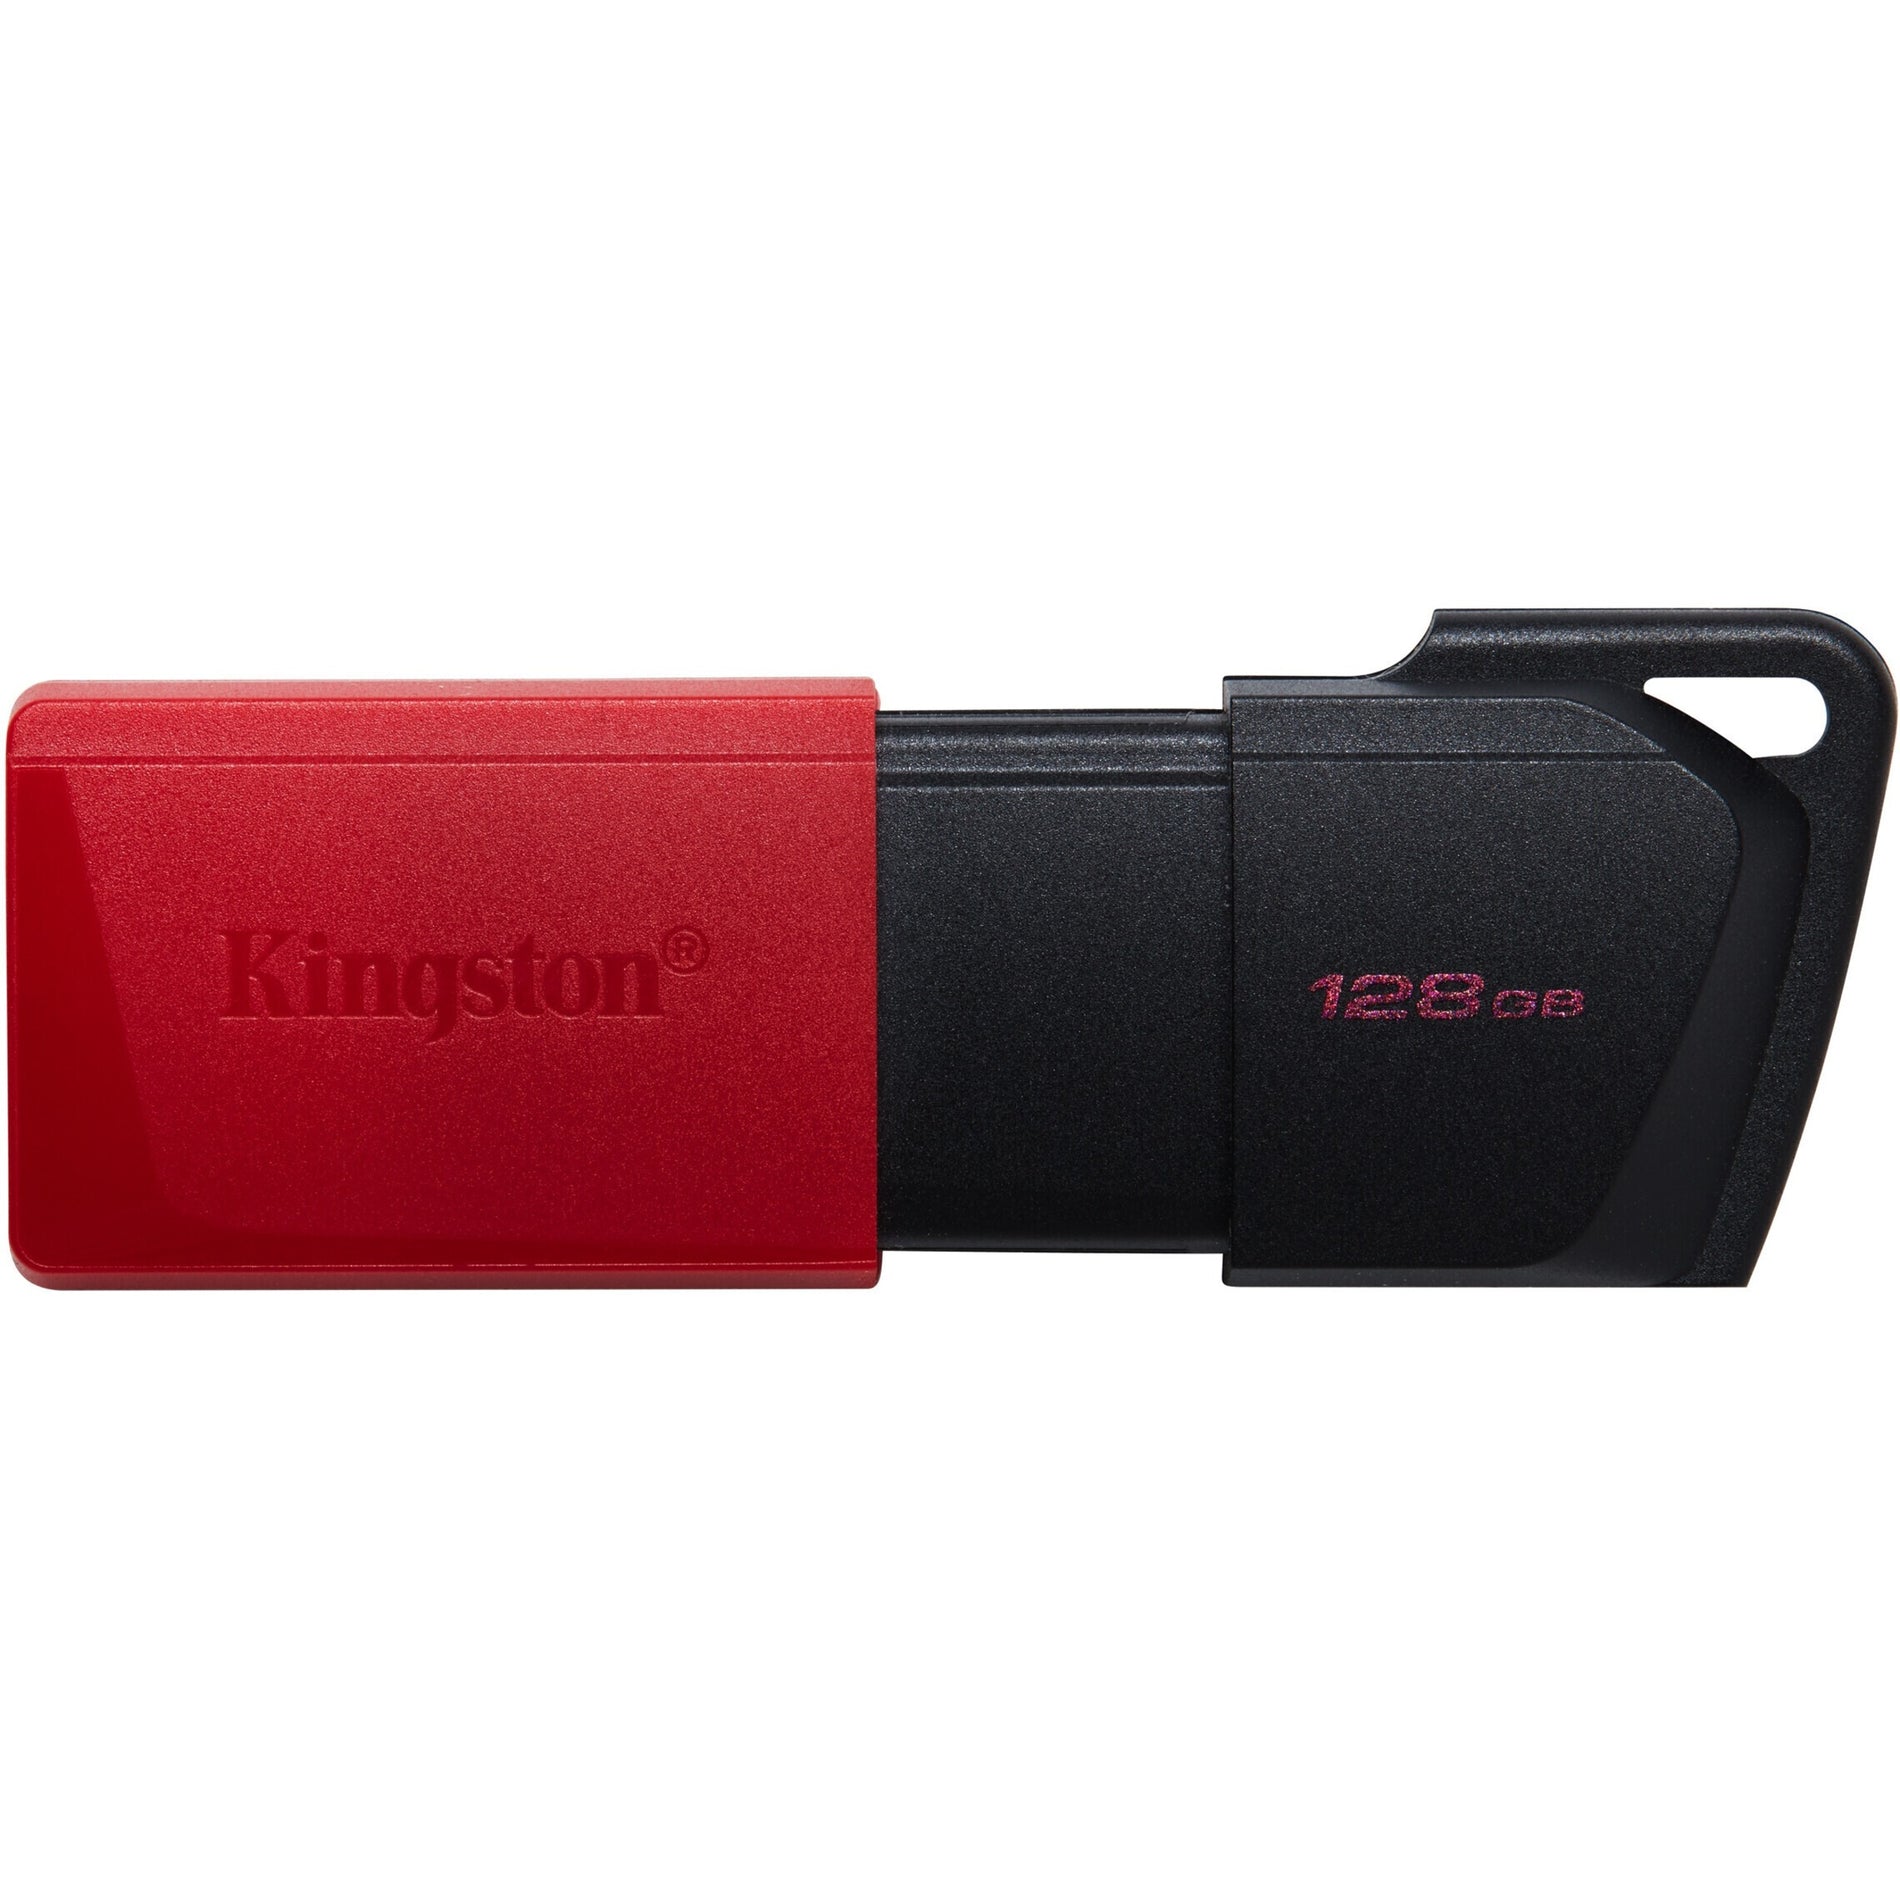 キングストン DTXM/128GB データトラベラー エクソディア M USB フラッシュドライブ、128GB ストレージ、軽量、スライディングキャップ、キーリング、ポータブル  ブランド名：キングストン